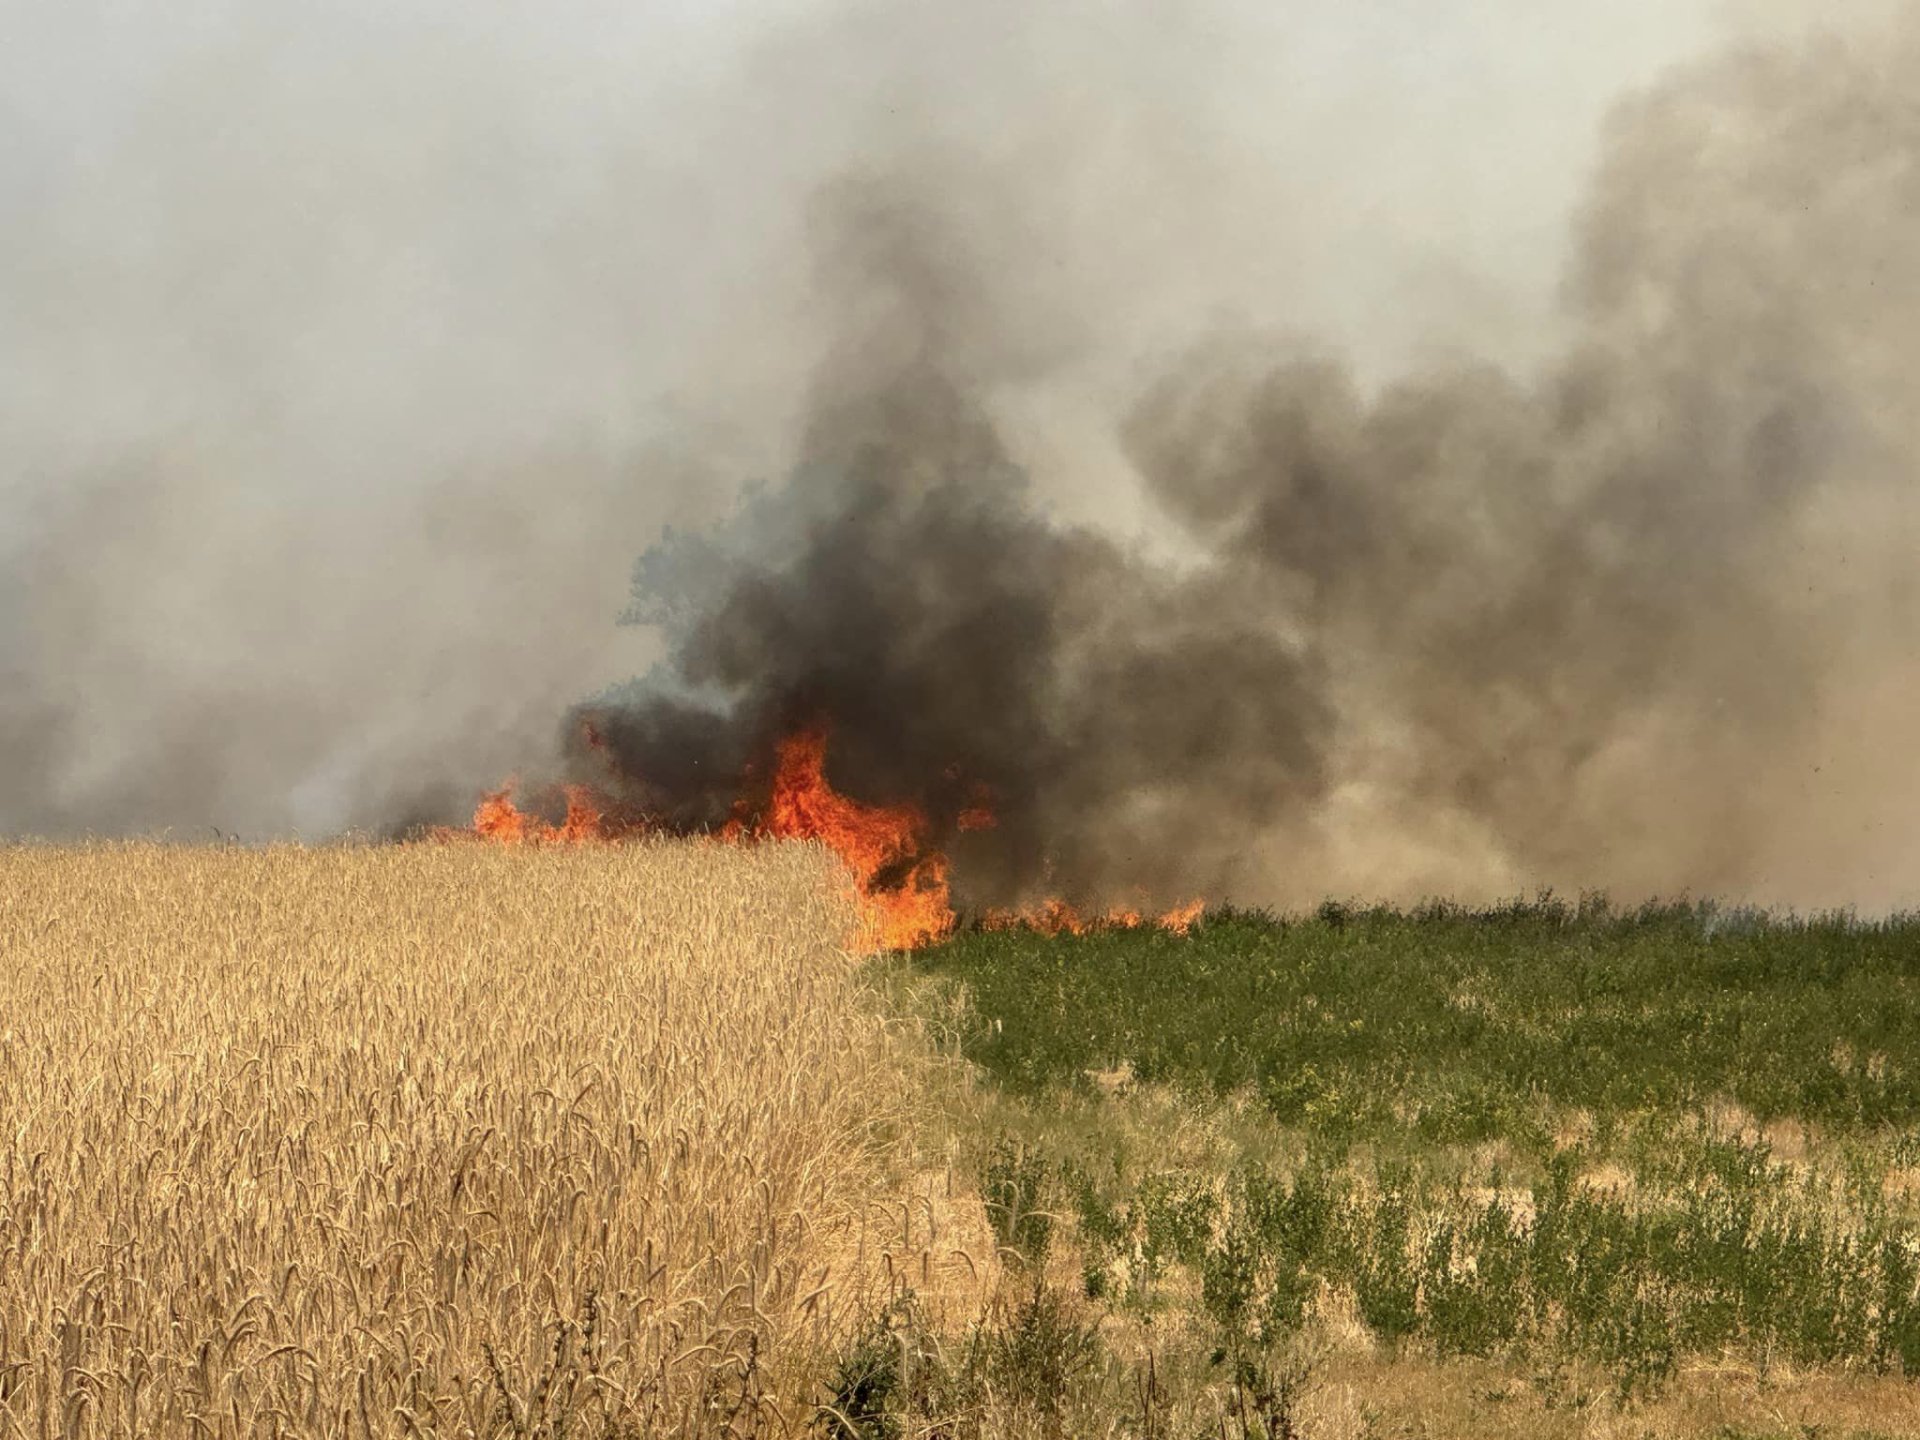 Огънят се разраства: Бедствено положение в още една община